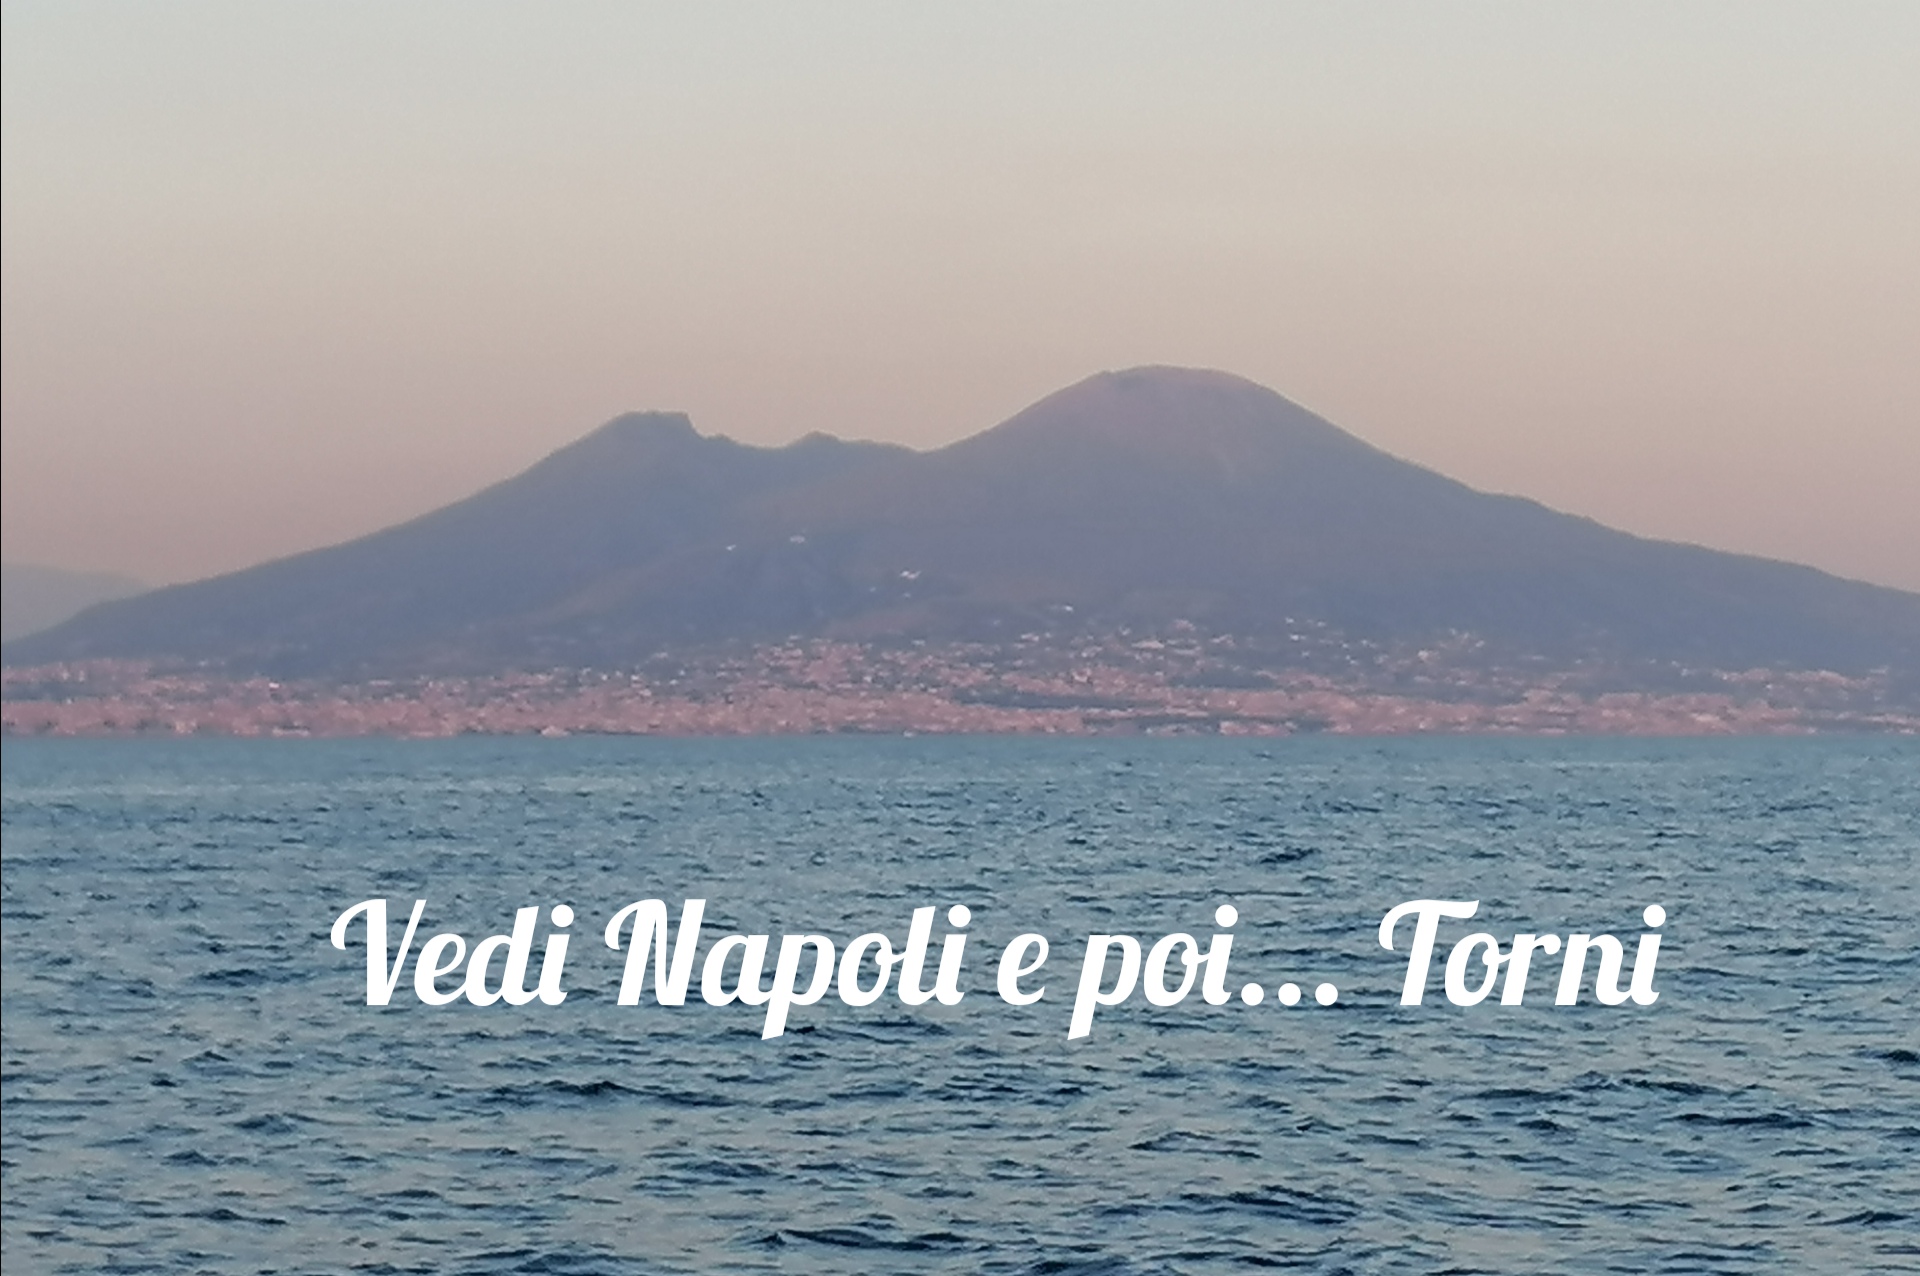 Vivere Napoli, per turisti e cittadini un programma ricco di eventi, musica e visite guidate